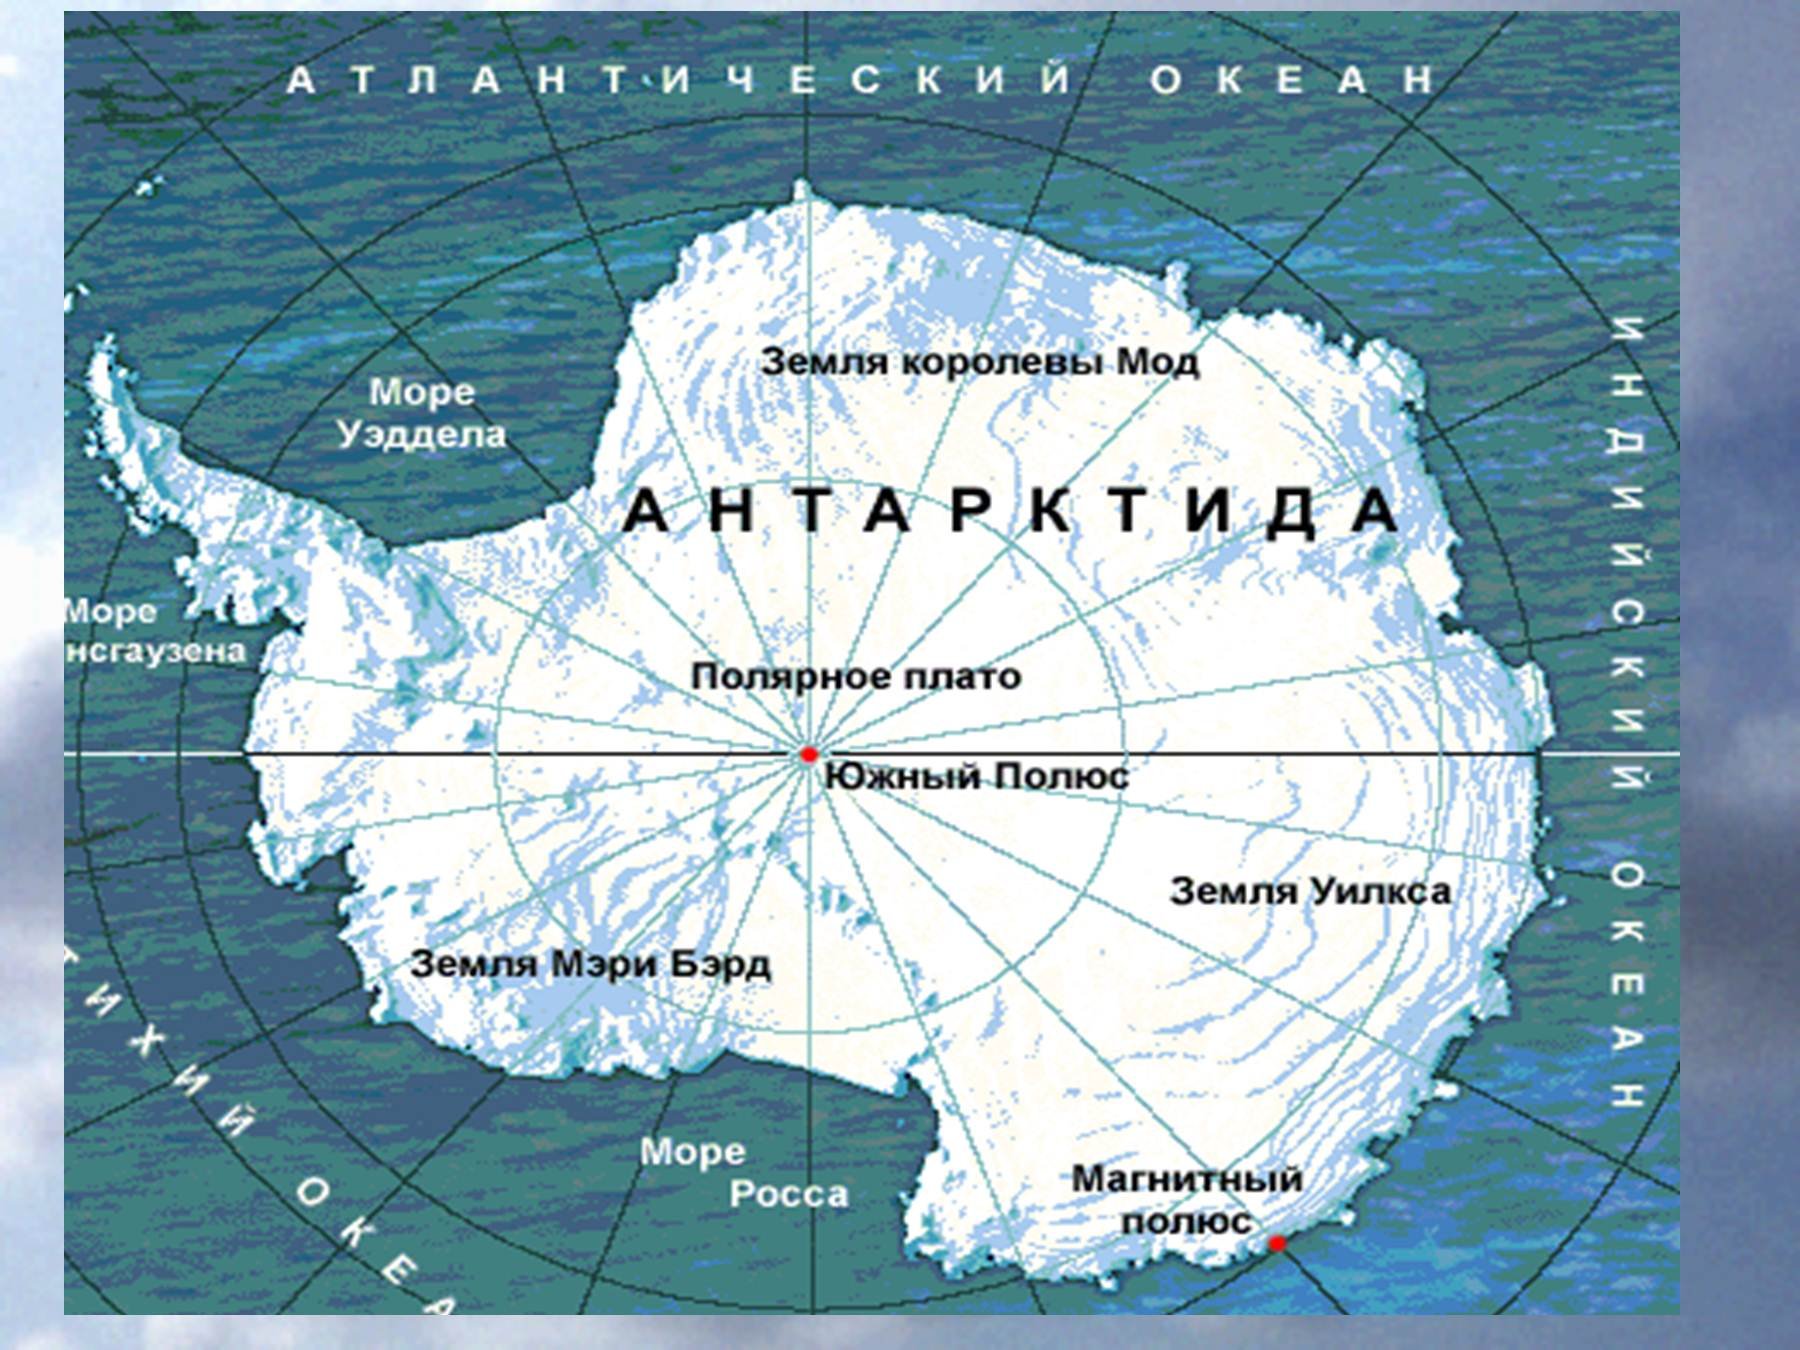 Южный океан пояса. Карта Антарктиды моря омывающие Антарктиду. Антарктида моря Росса Уэдделла Беллинсгаузена Амундсена. Моря: Амундсена, Беллинсгаузена, Росса, Уэдделла..